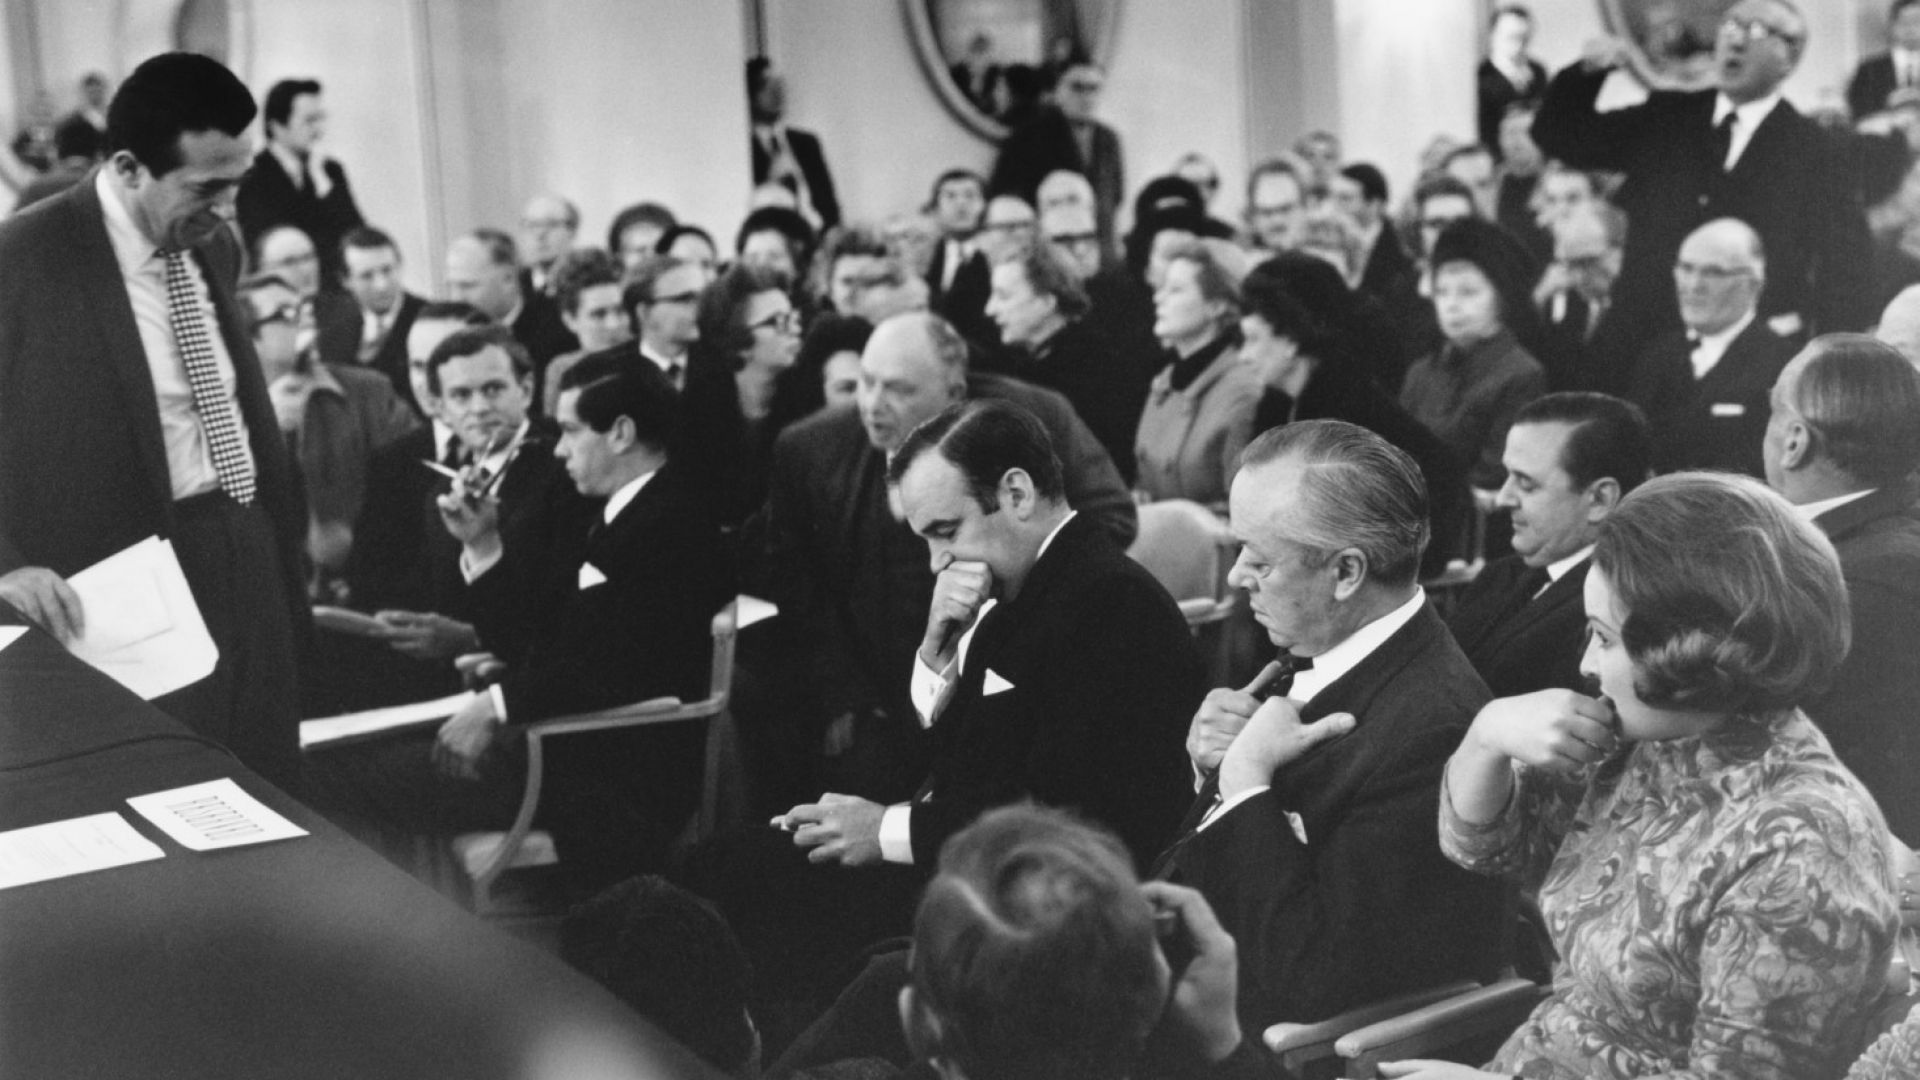 Съперниците Робърт Максуел, (изправен вляво) и Рупърт Мърдок (в средата) очакват гласуване на офертите им за вестник News Of The World по време на събрание на акционерите в Лондон, 2 януари 1969 г.